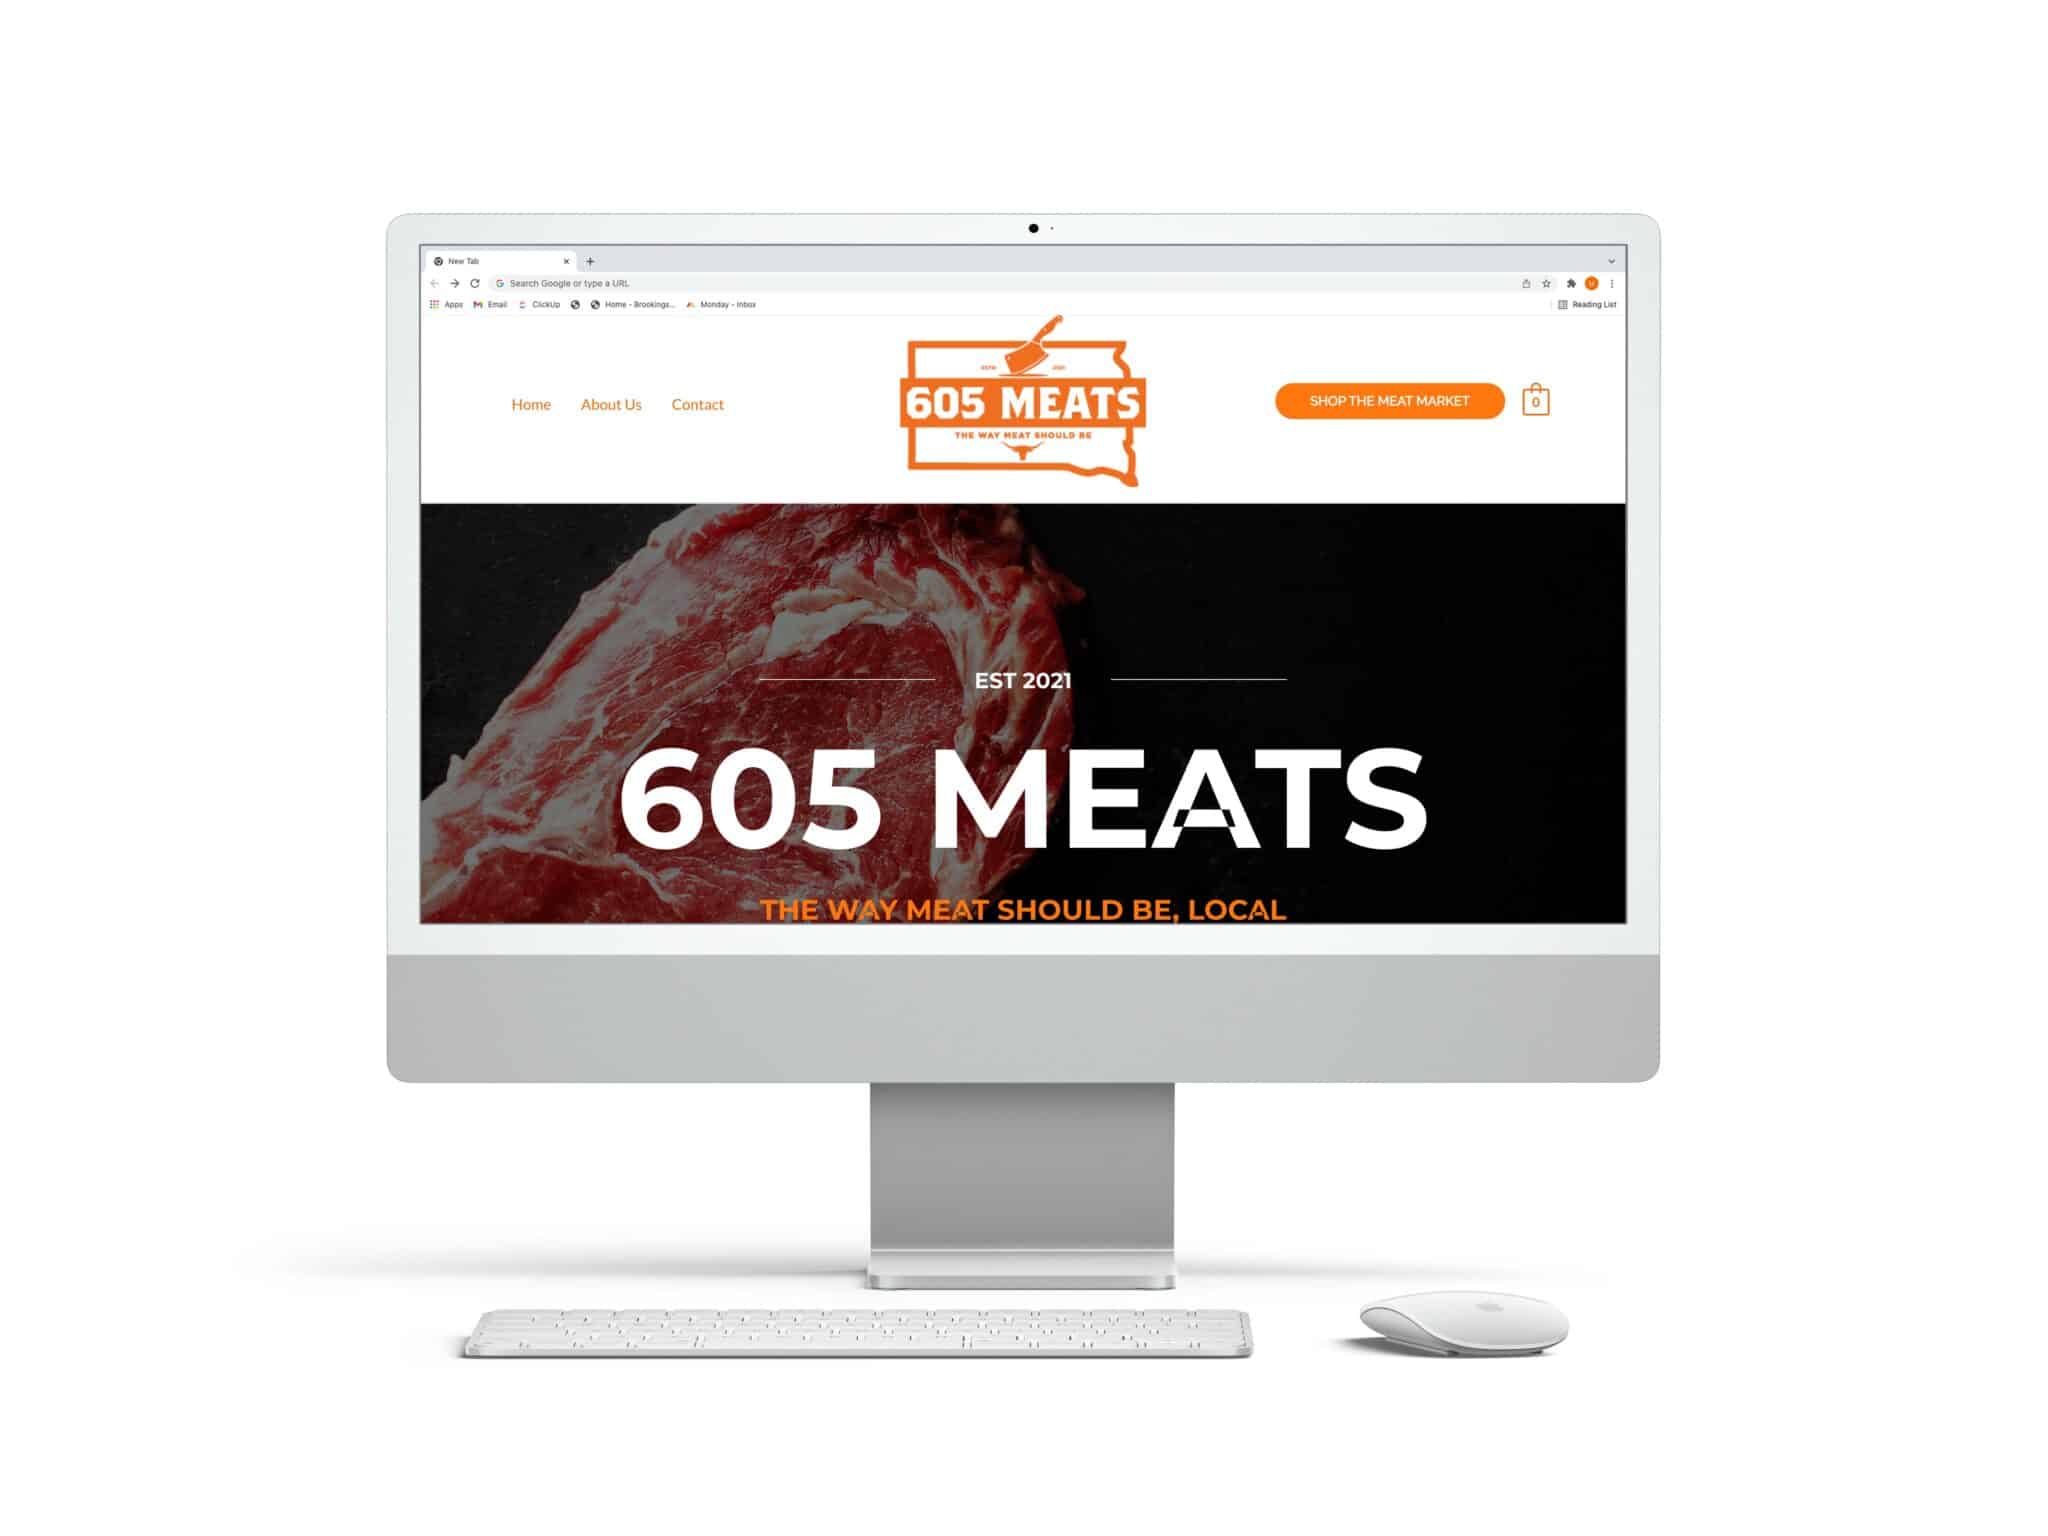 605 Meats